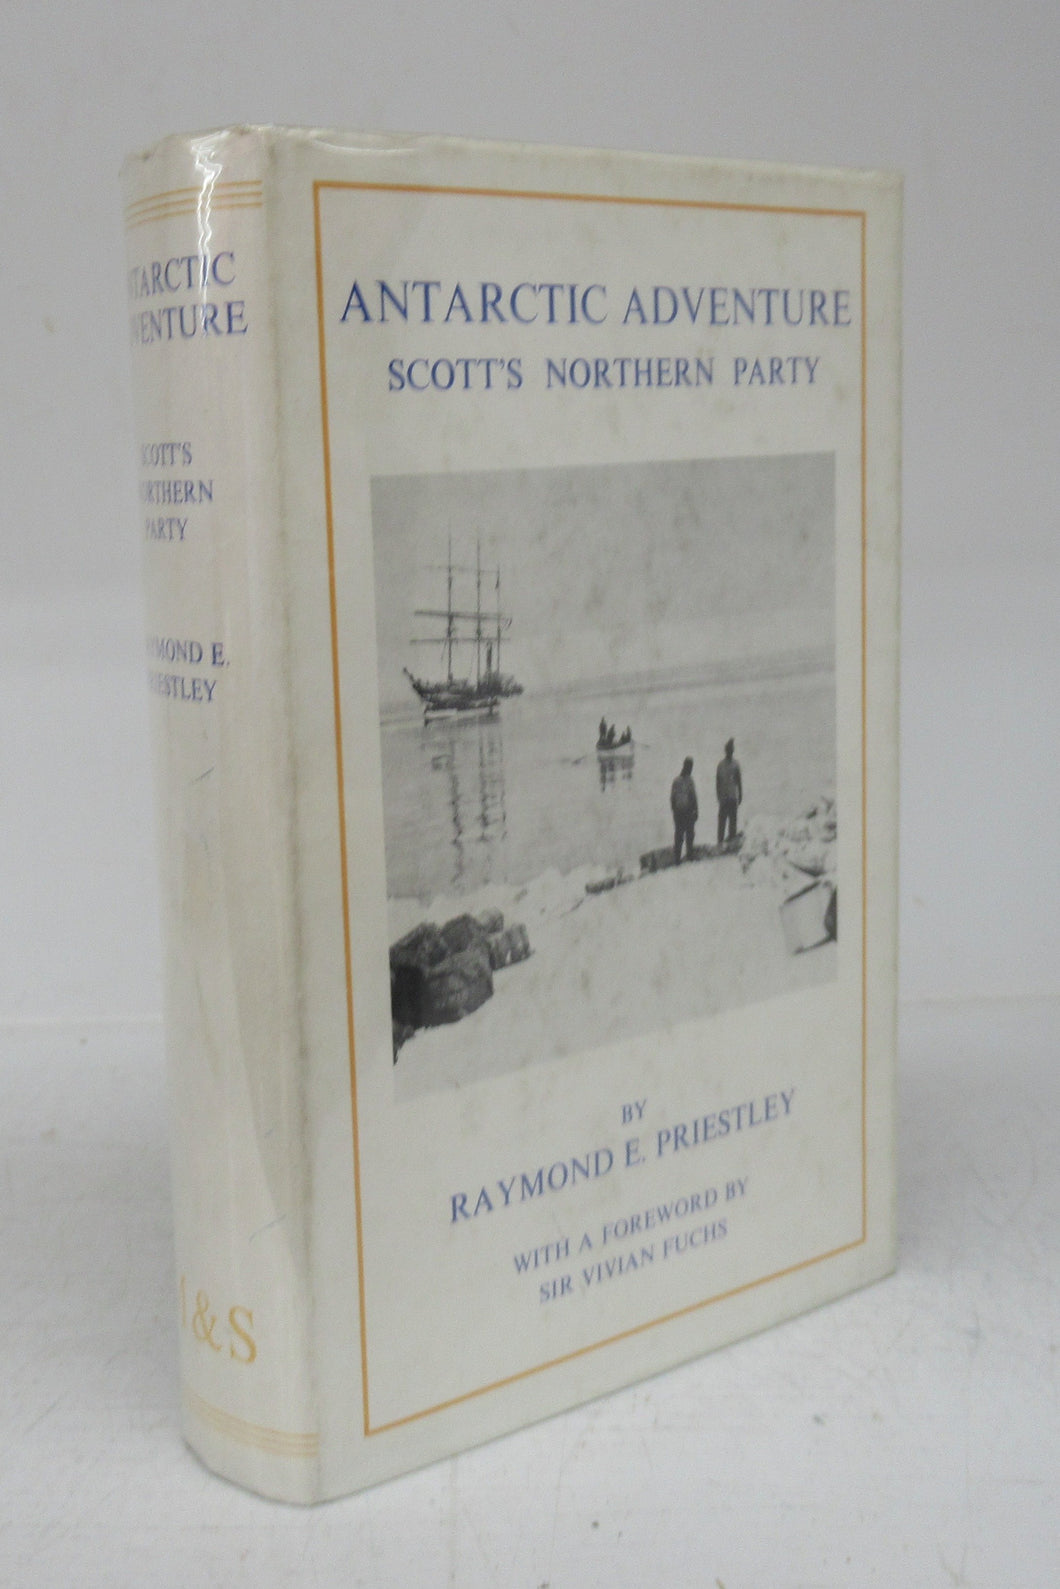 Antarctic Adventure: Scott's Northern Party